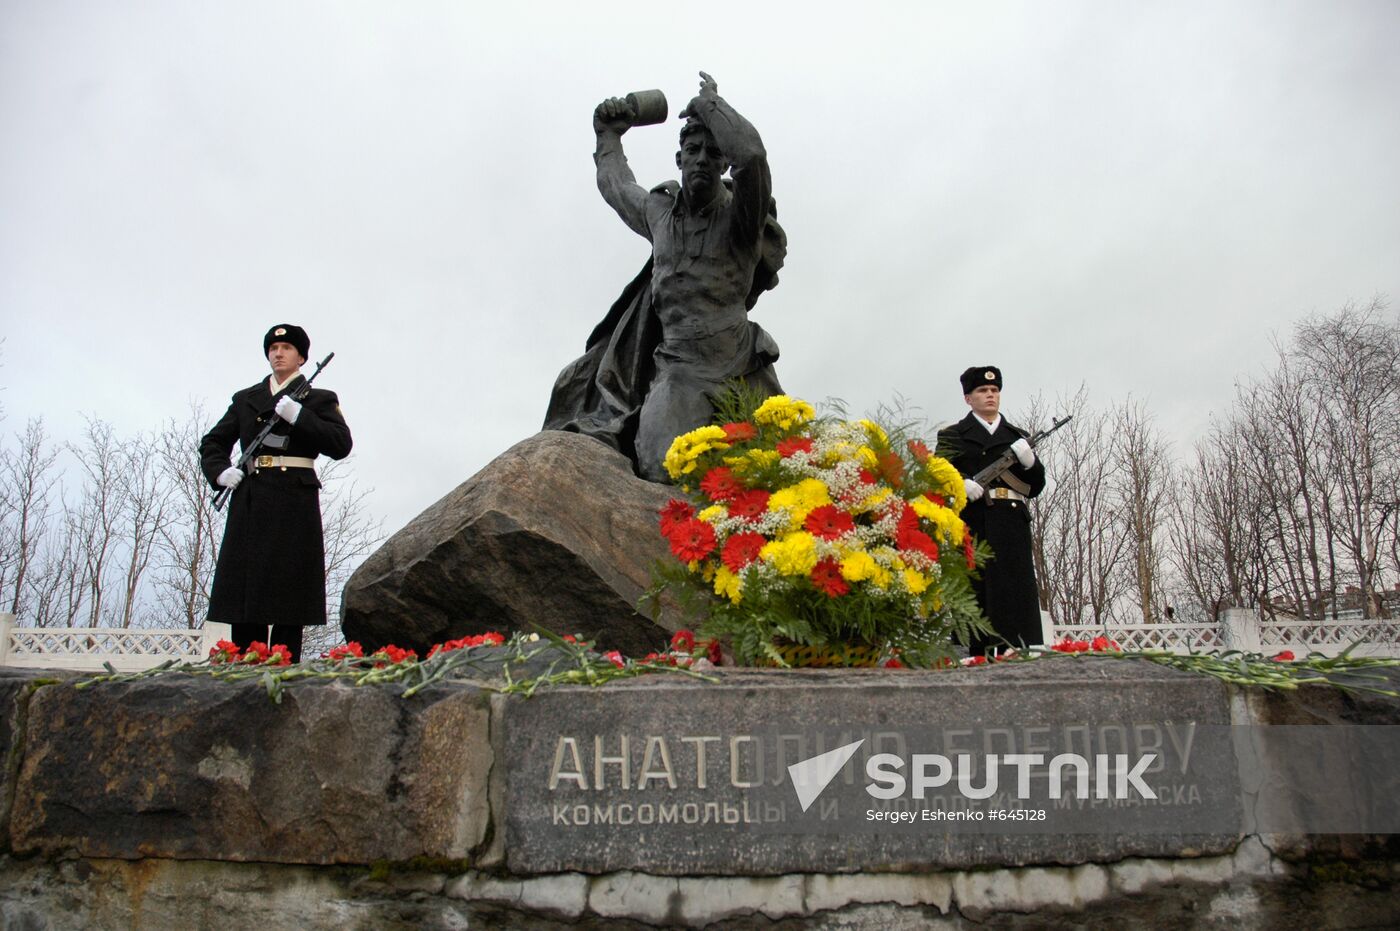 Memorial to Anatoly Bredov, Hero of the Soviet Union